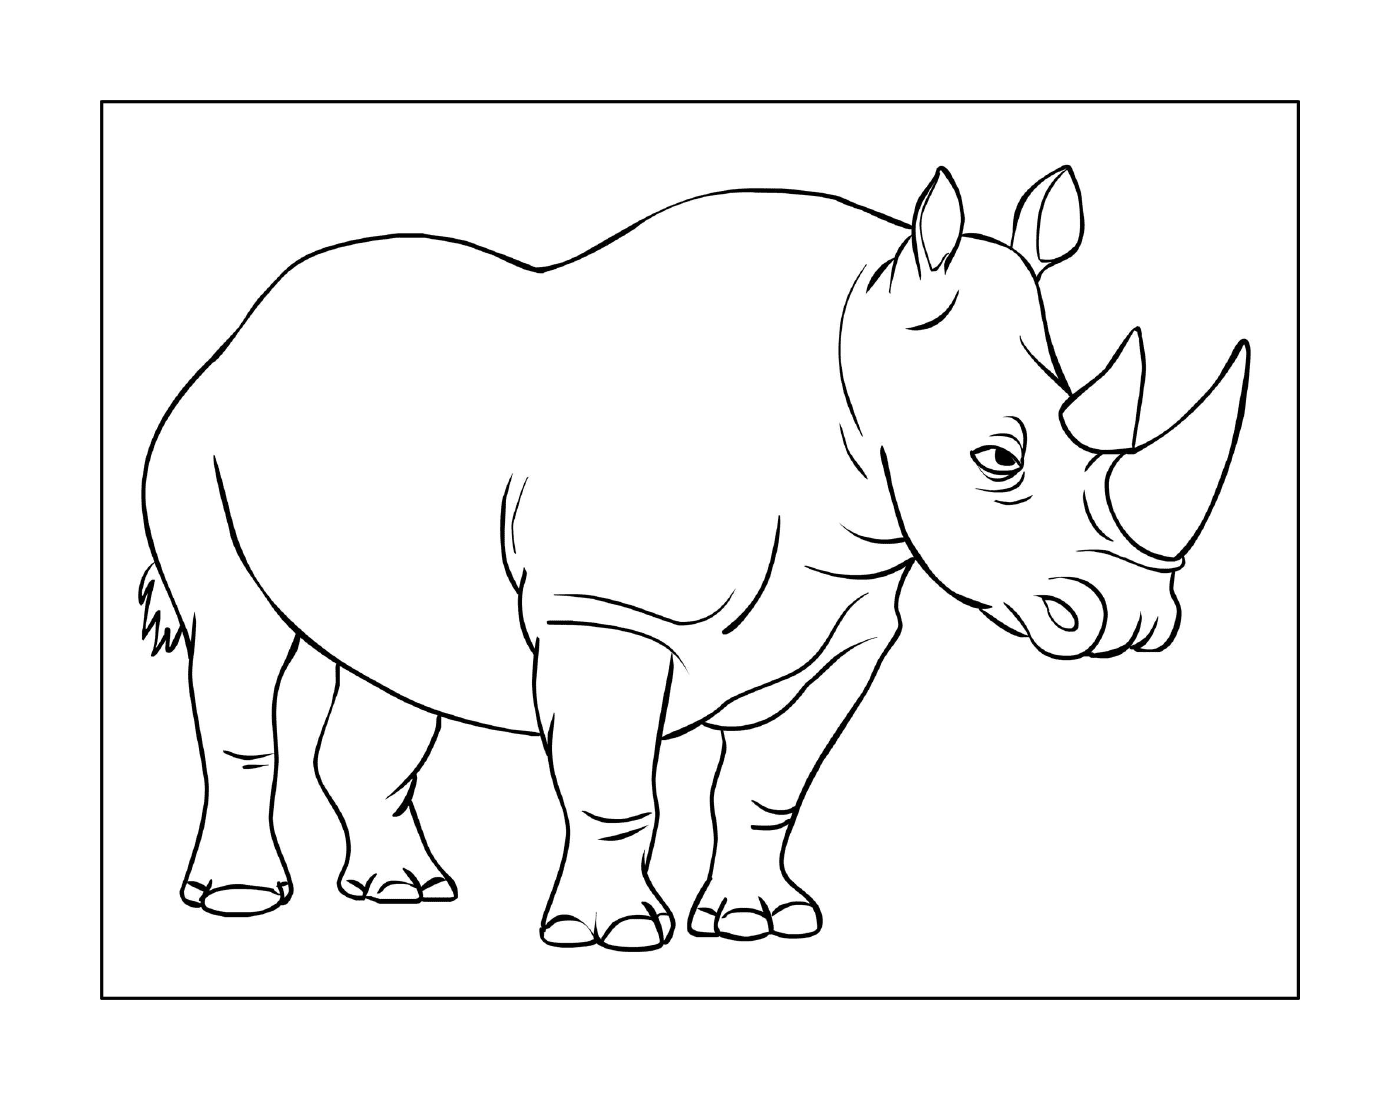  Un rinoceronte 